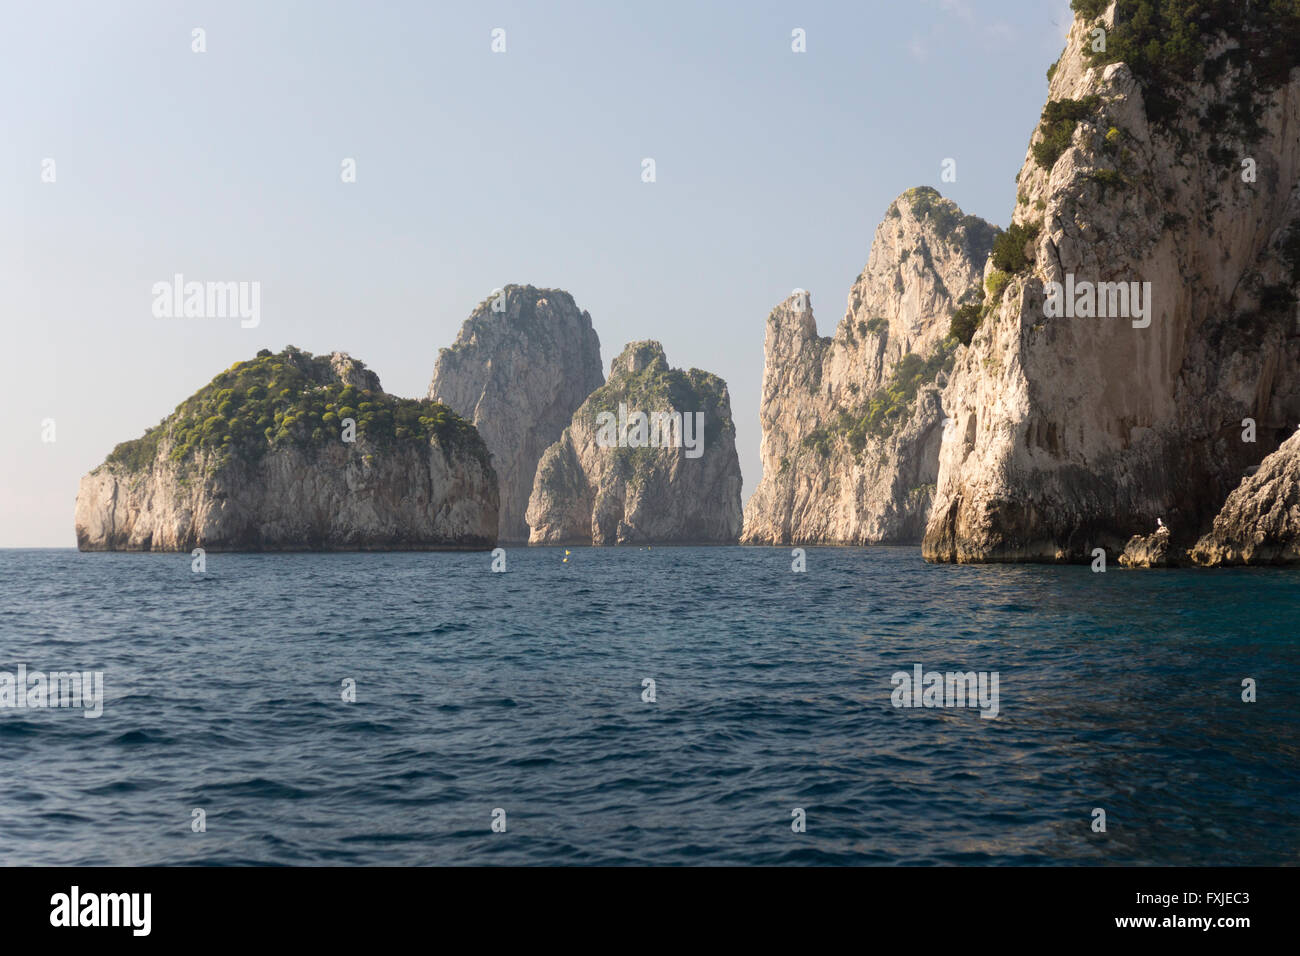 Las rocas Faraglioni, Stella, di Mezzo y di Fuori frente a la costa sur de Capri. El legendario trío de gigantes marinos de Capri en el Golfo de Nápoles. Italia Foto de stock